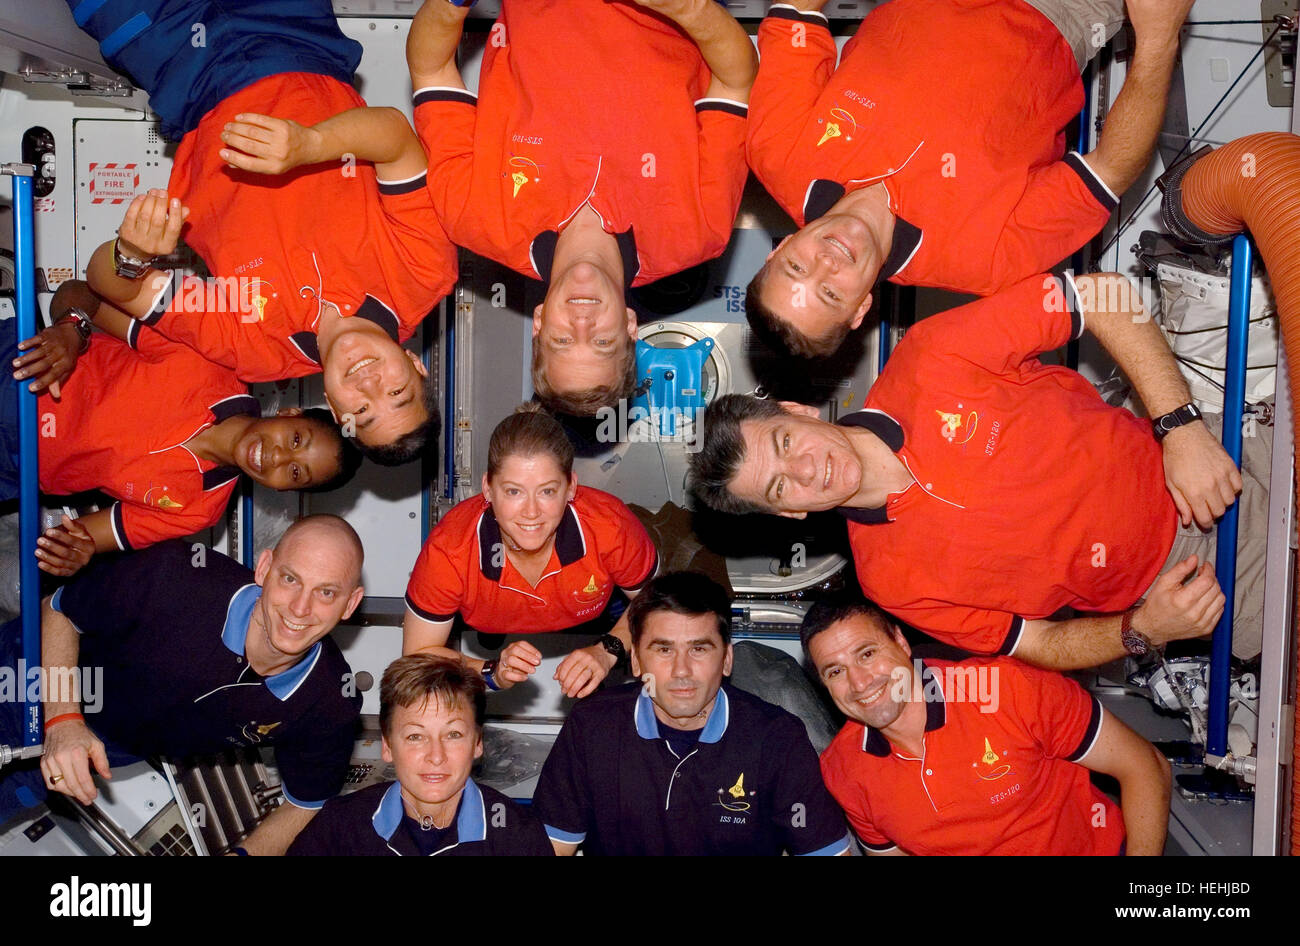 NASA STS-120 und Expedition 16 Crew-Mitglieder, die Astronauten (L-R) Peggy Whitson, Clayton Anderson, Stephanie Wilson, Daniel Tani, Scott Parazynski, Doug Wheelock, italienischer Astronaut Paolo Nespoli der European Space Agency, George Zamka russischen Kosmonauten Yuri Malenchenko von Roskosmos, und Pam Melroy (Mitte) steckten die Köpfe in der Mitte für ein Foto nach einer Pressekonferenz in der internationalen Raumstation ISS Harmonie Knoten beim Space Shuttle Discovery wird mit der Station angedockt 8 Juli , 2009 in der Erdumlaufbahn. Stockfoto